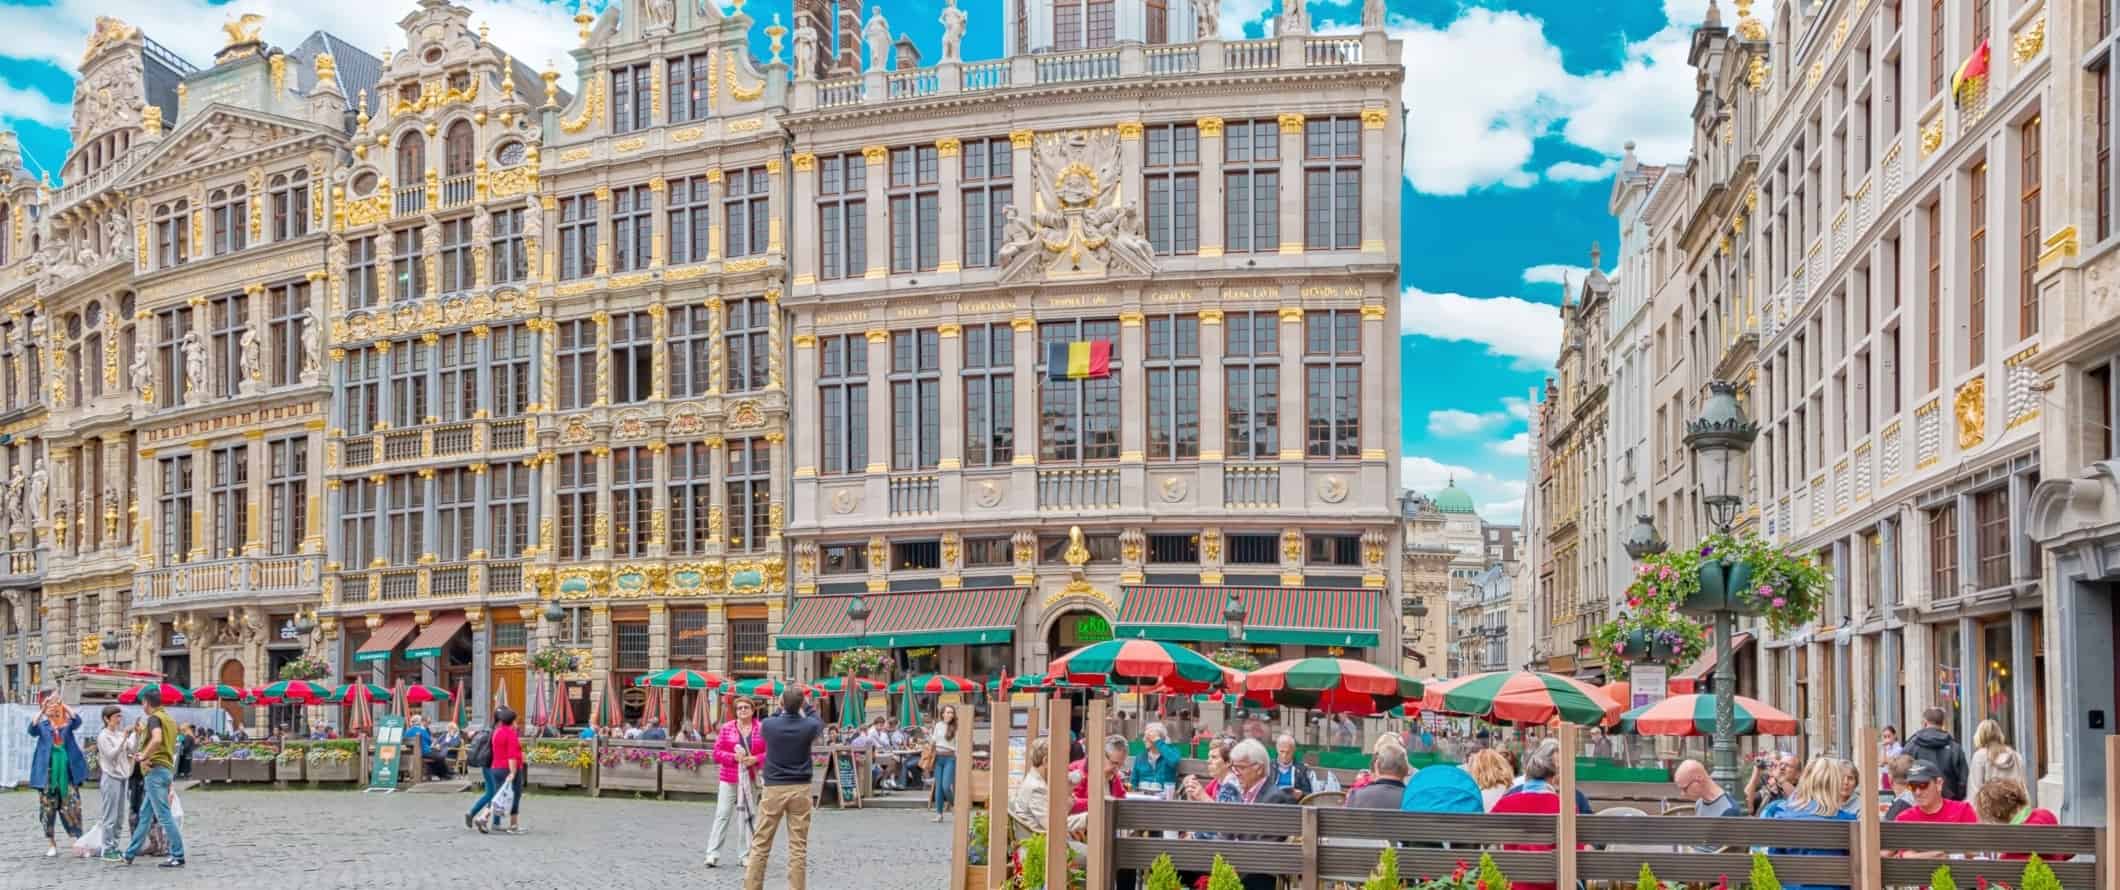 Historical Square Grand Place com edifícios dourados no estilo Art Nouveau em Bruxelas, Bélgica